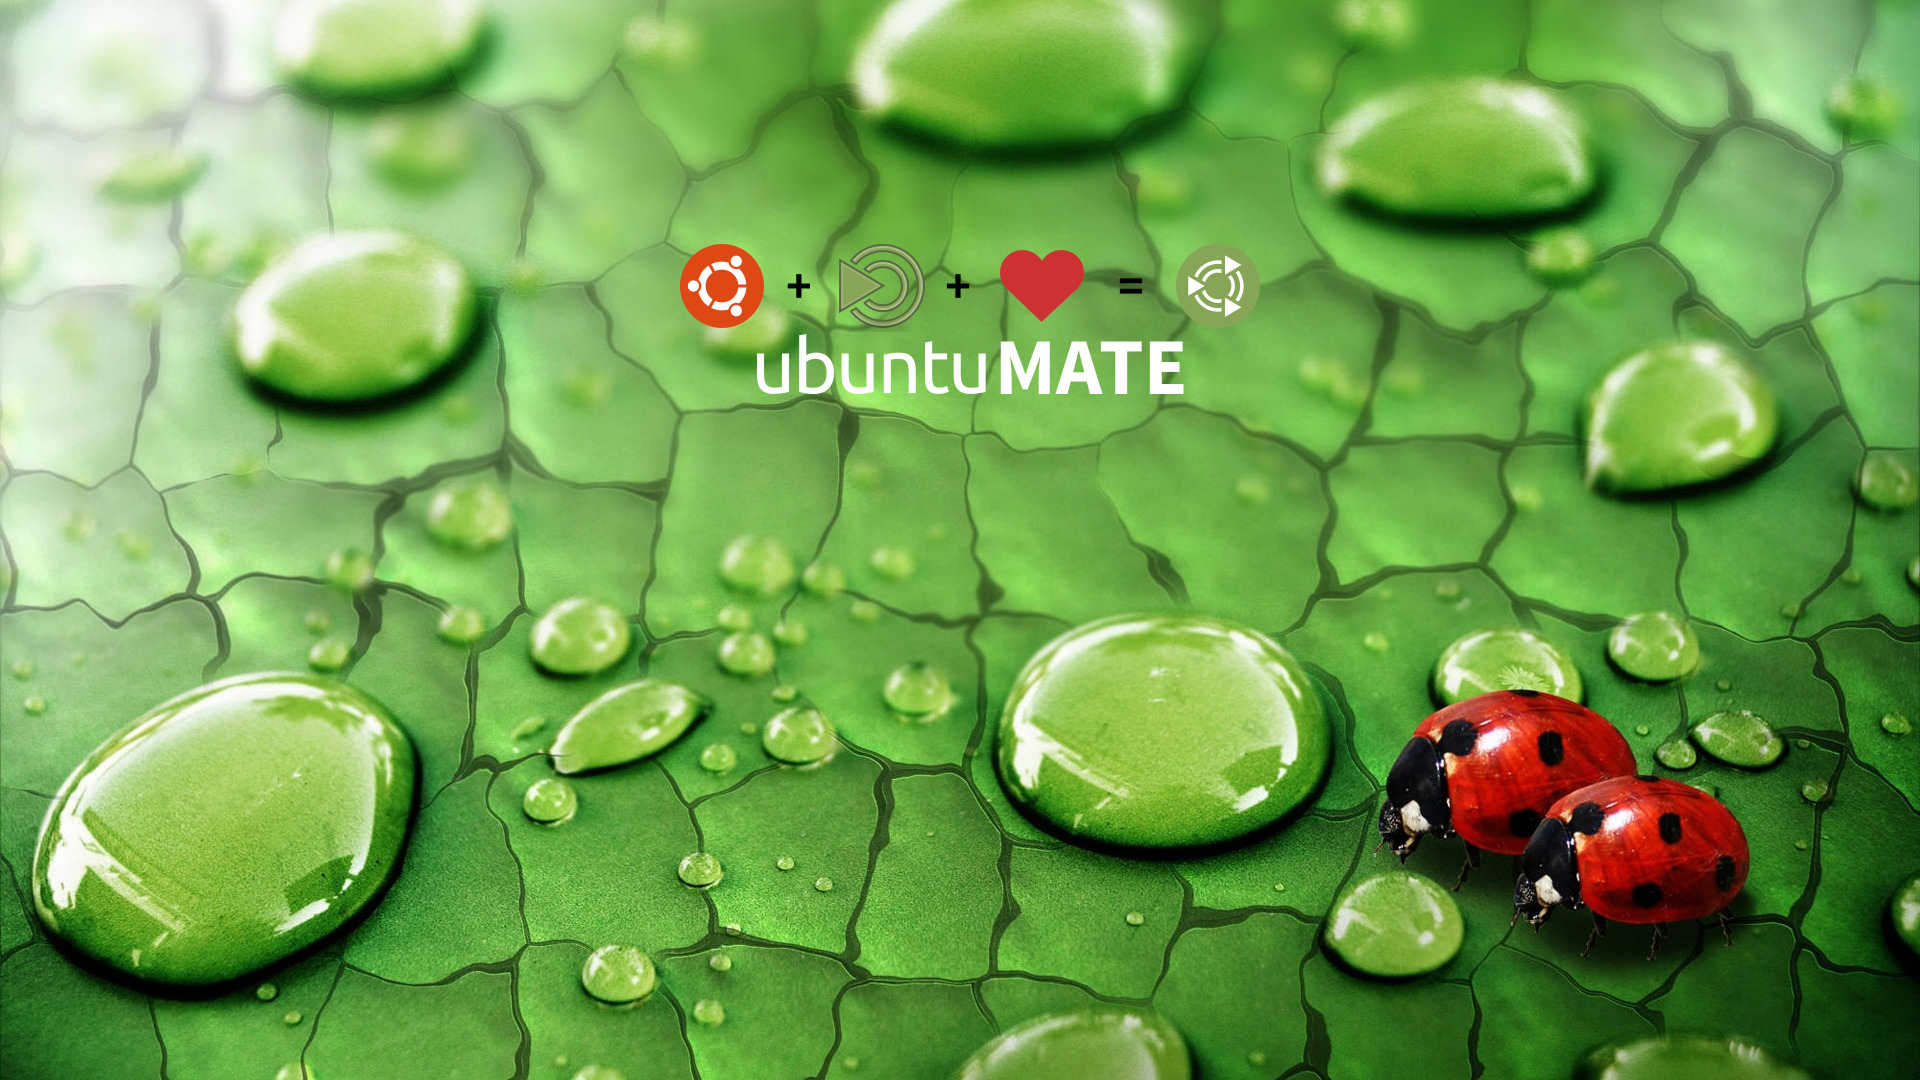 Some Ubuntumate Wallpaper Artwork Ubuntu Mate Munity